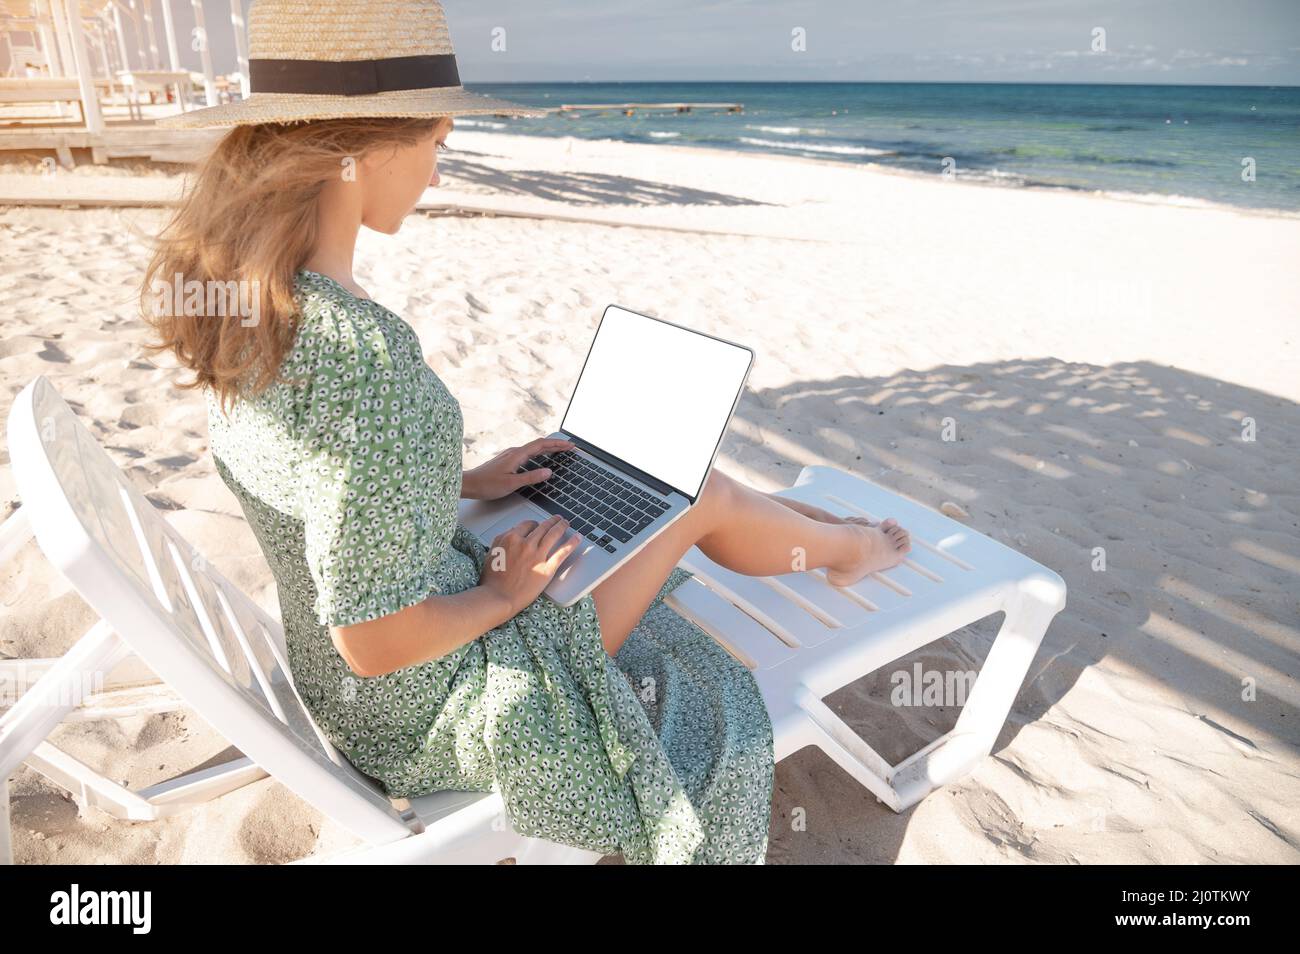 Rückansicht einer attraktiven jungen kaukasischen Frau in einem grünen Kleid und Hut sitzt auf einer Liege mit einem Laptop in den Händen in der sh Stockfoto